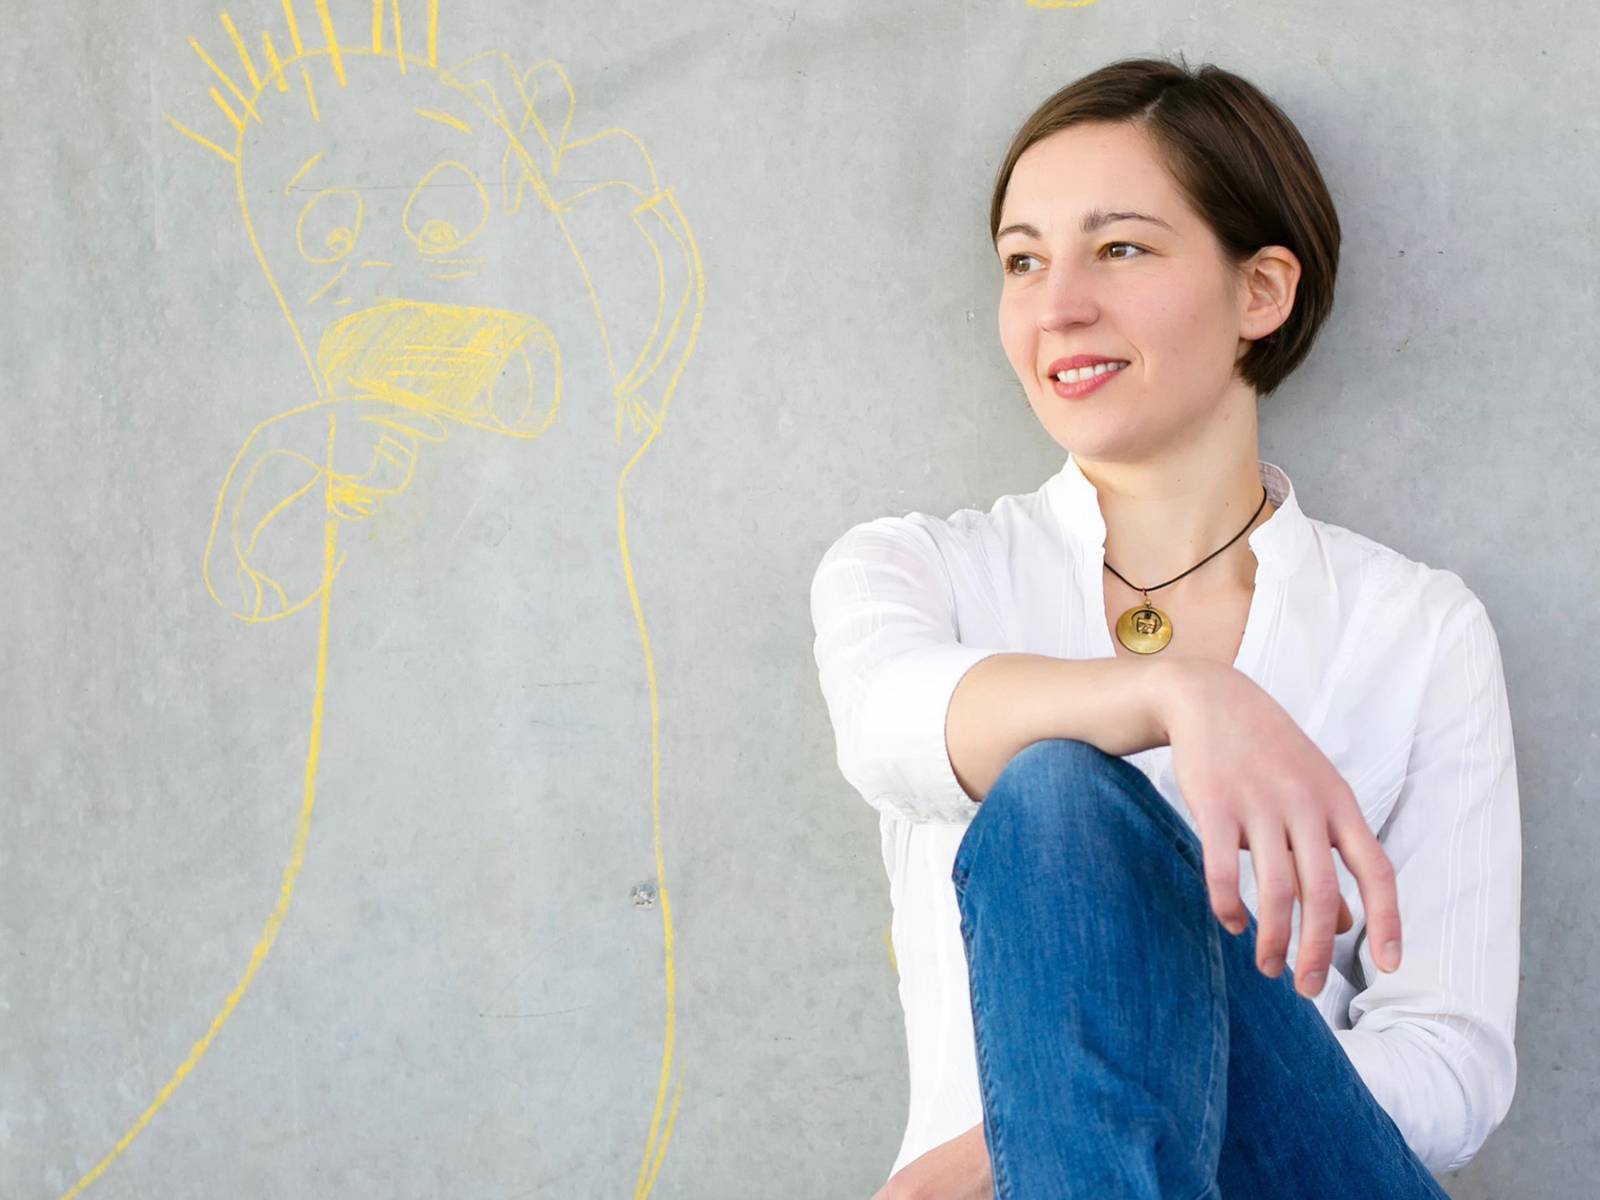 Portraitaufnahme einer Frau, die vor einer grauen Wand sitzt, neben ihr ist mit gelber Kreide eine Figur aufgemalt